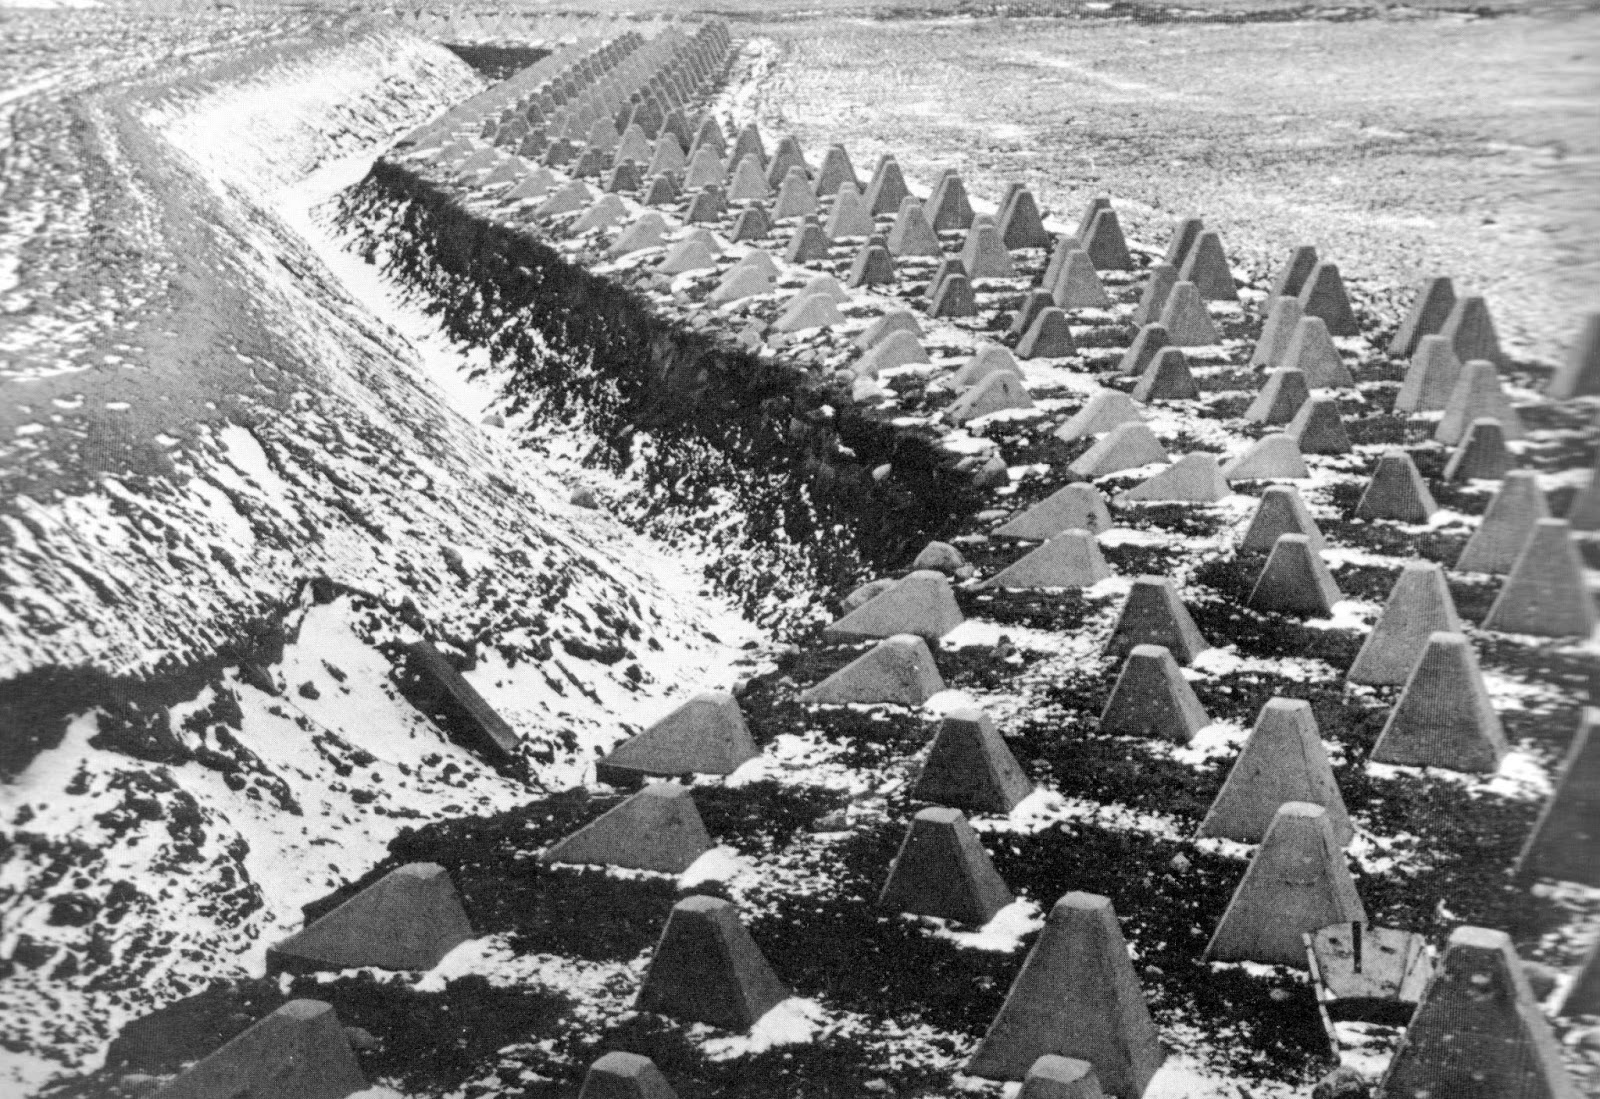 Siegfried line 1945